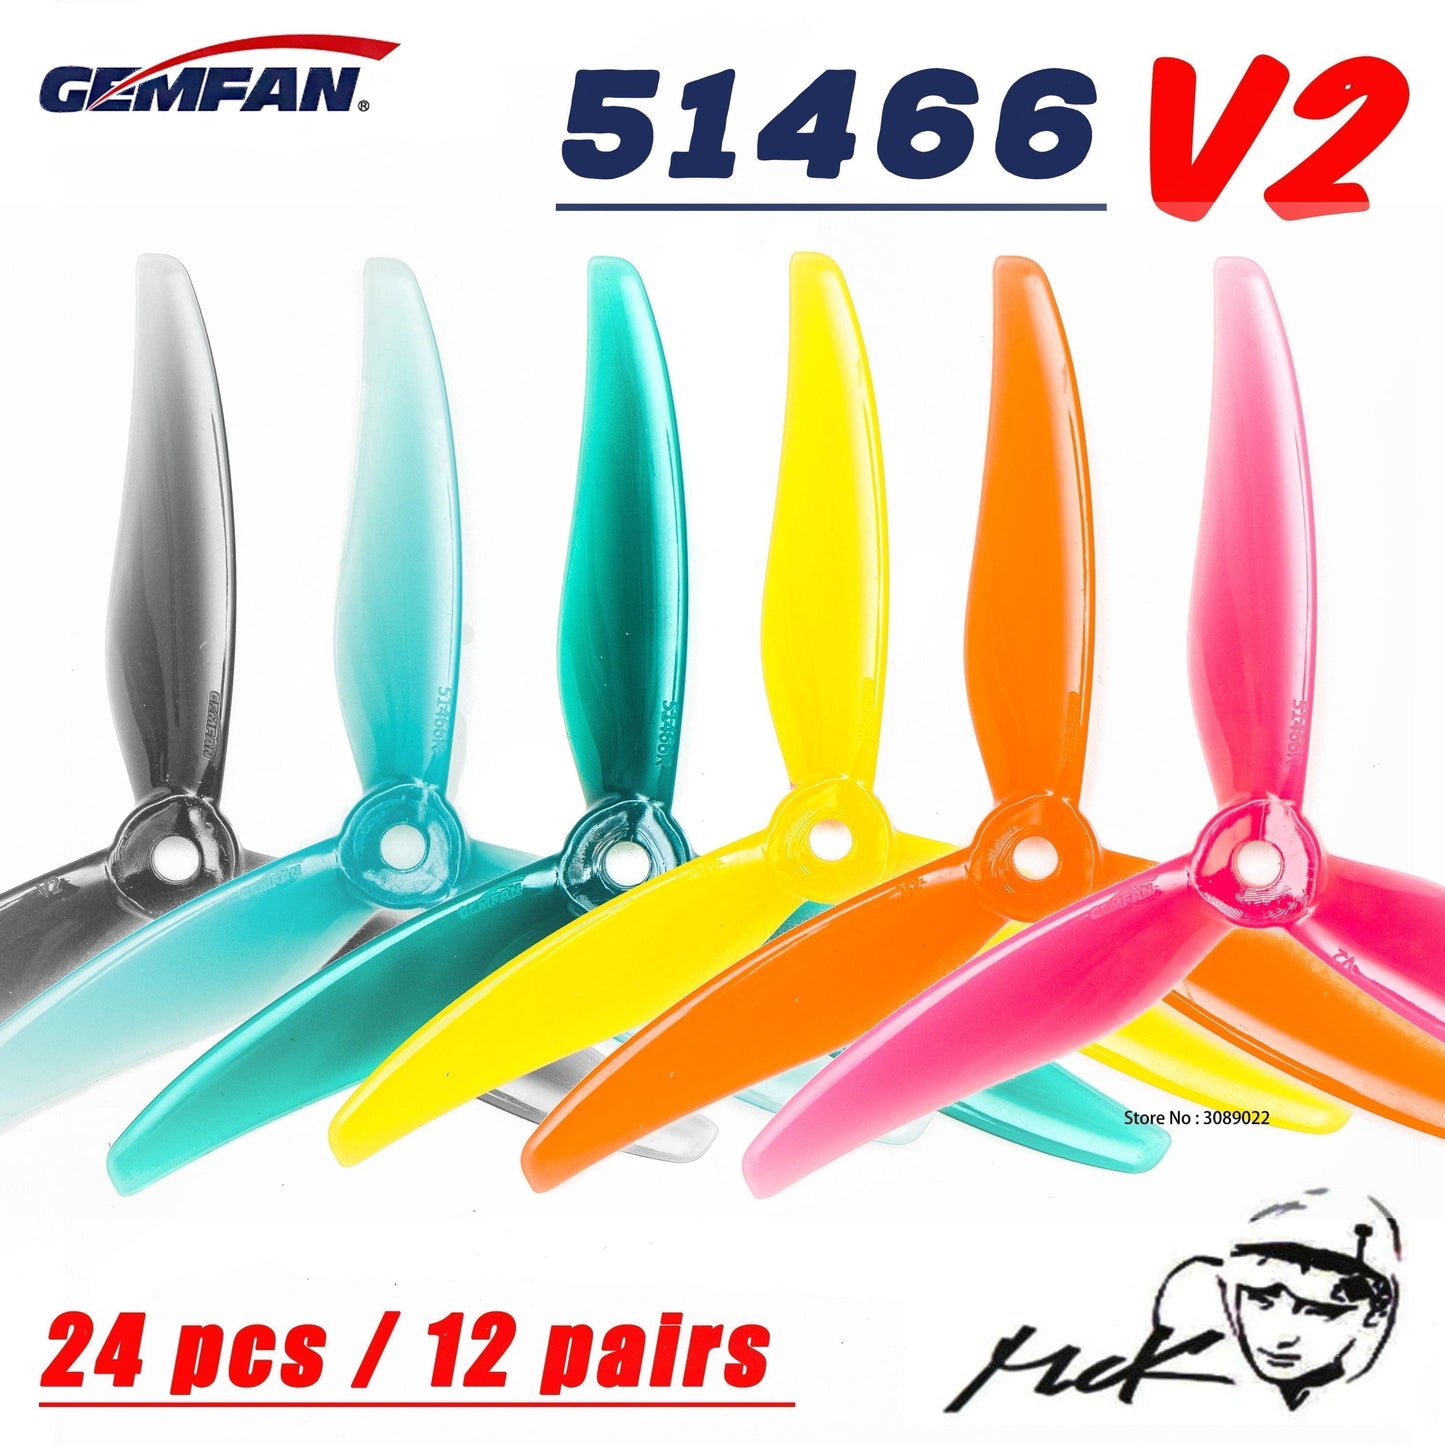 Gemfan 51466 V2 Propeller